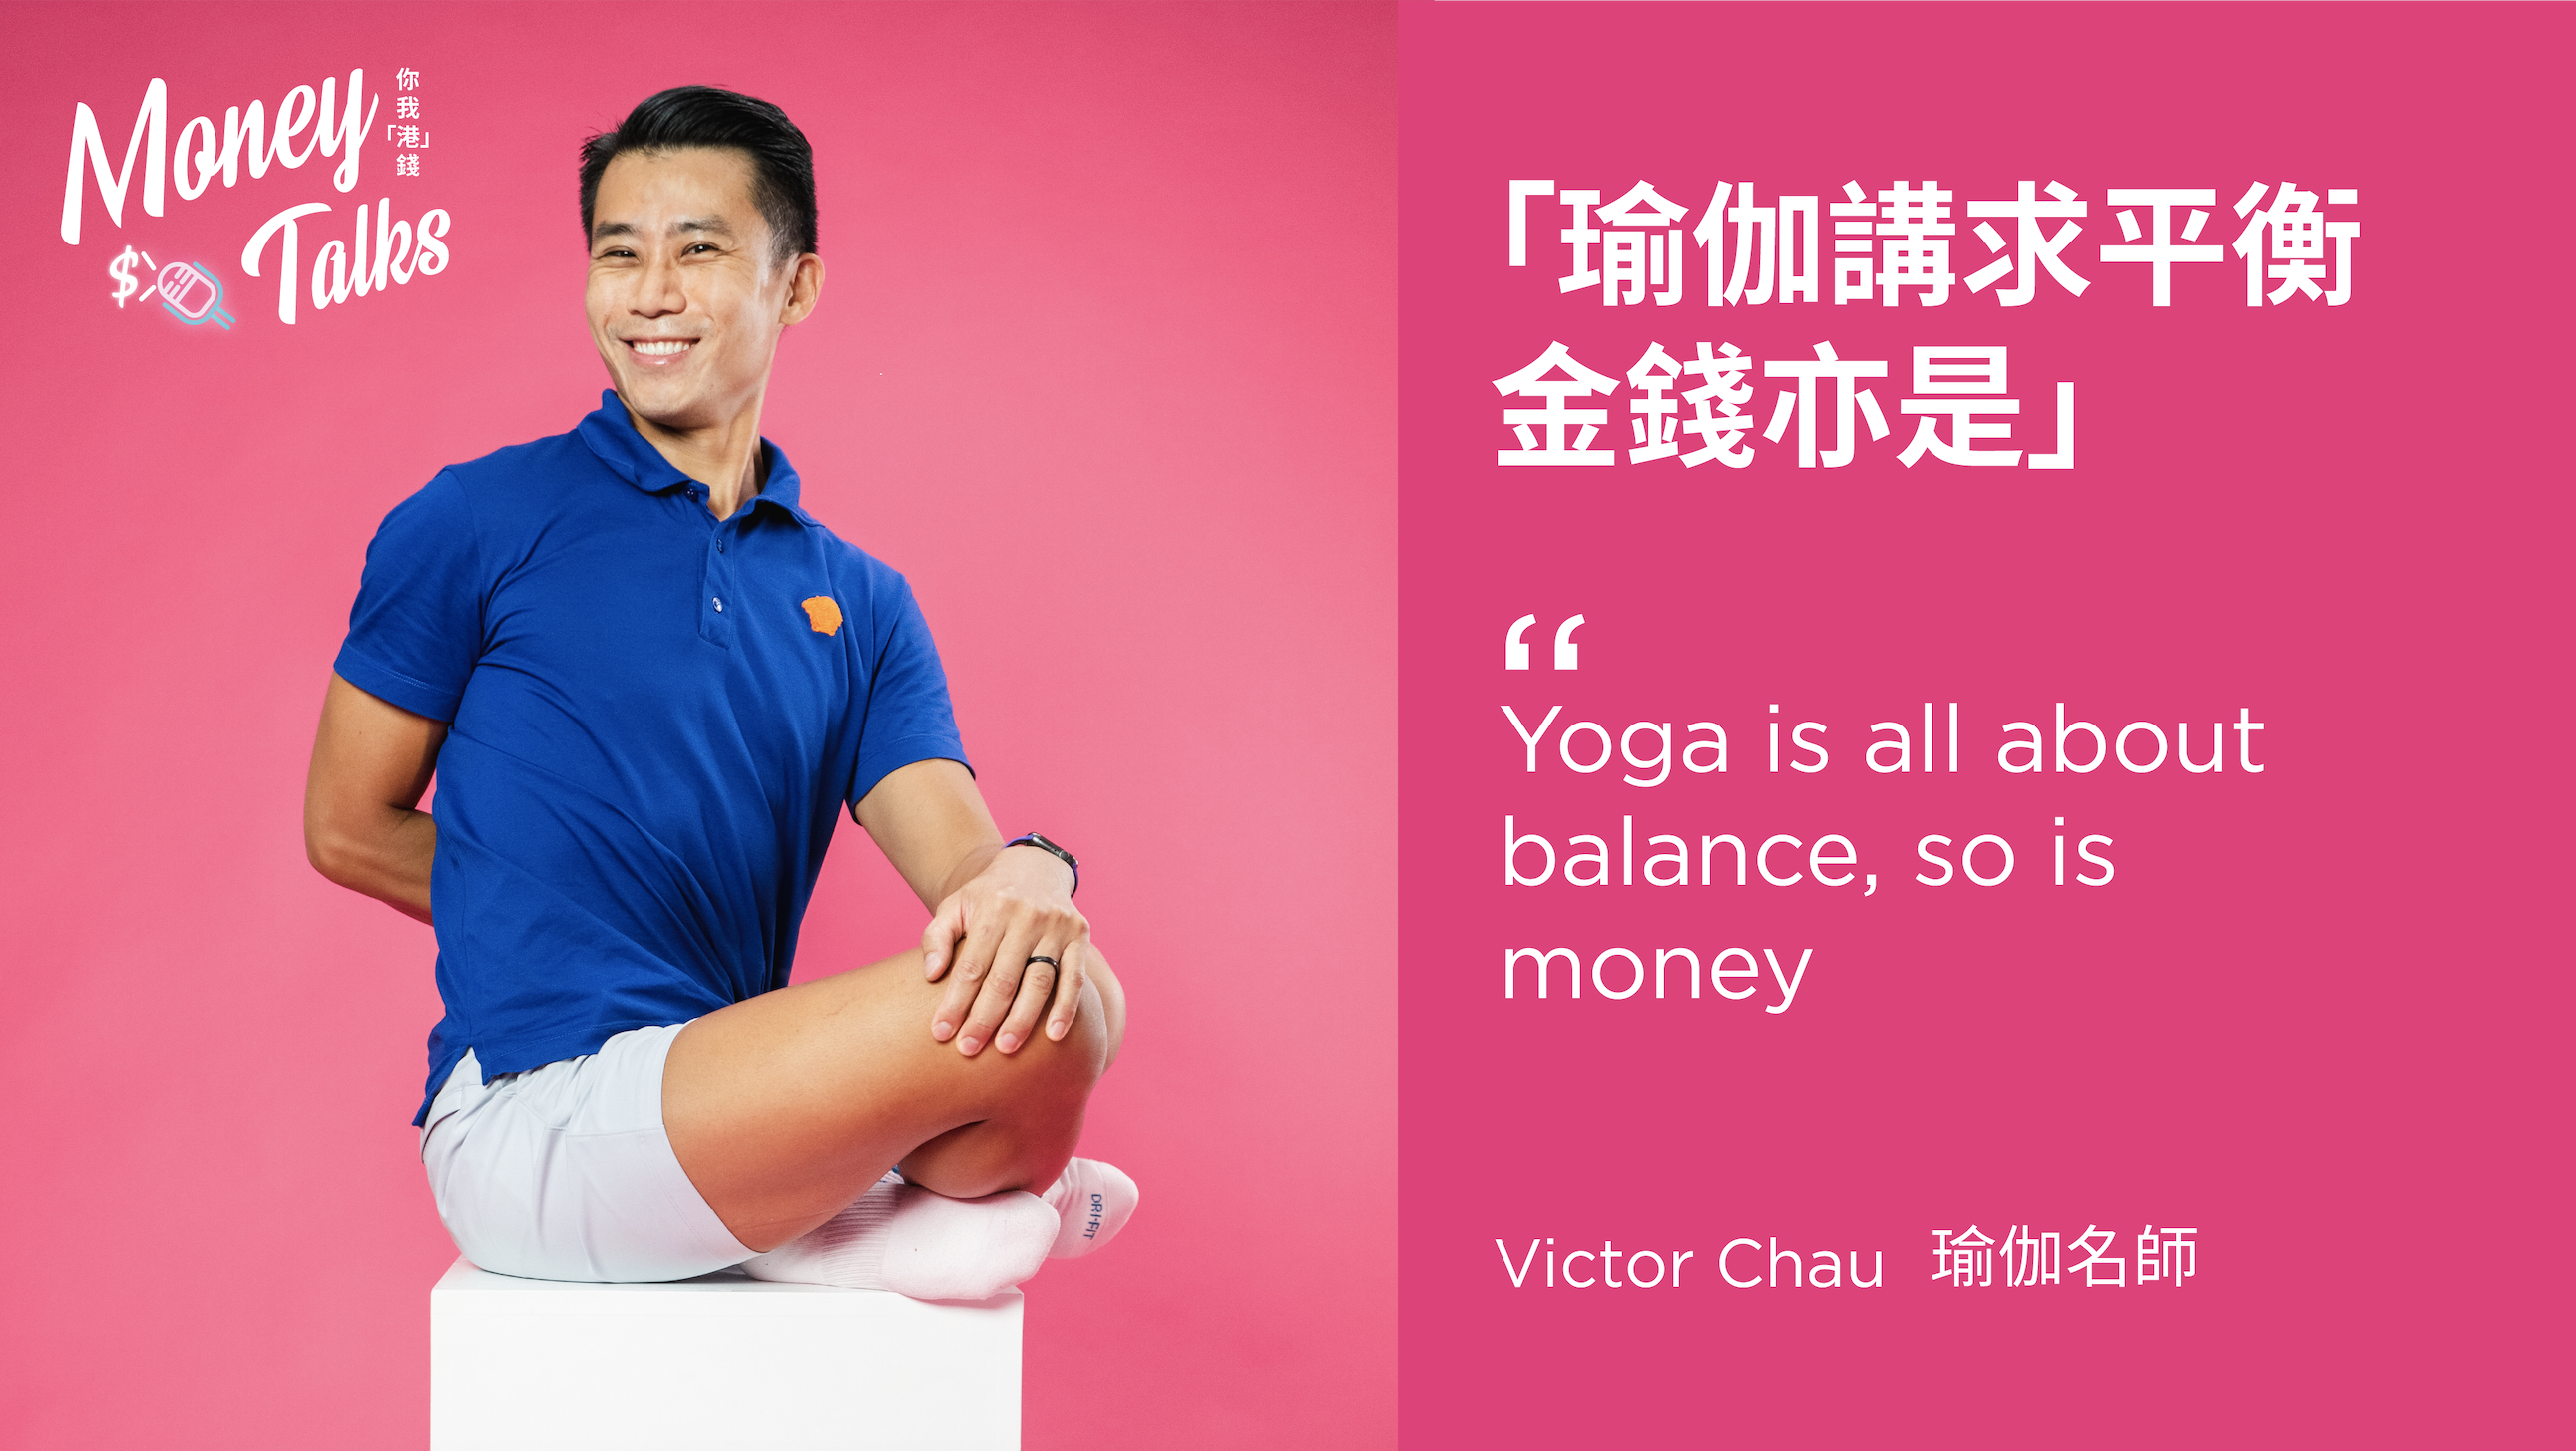 专访瑜伽名师Victor Chau - 财富管理就如练习瑜伽